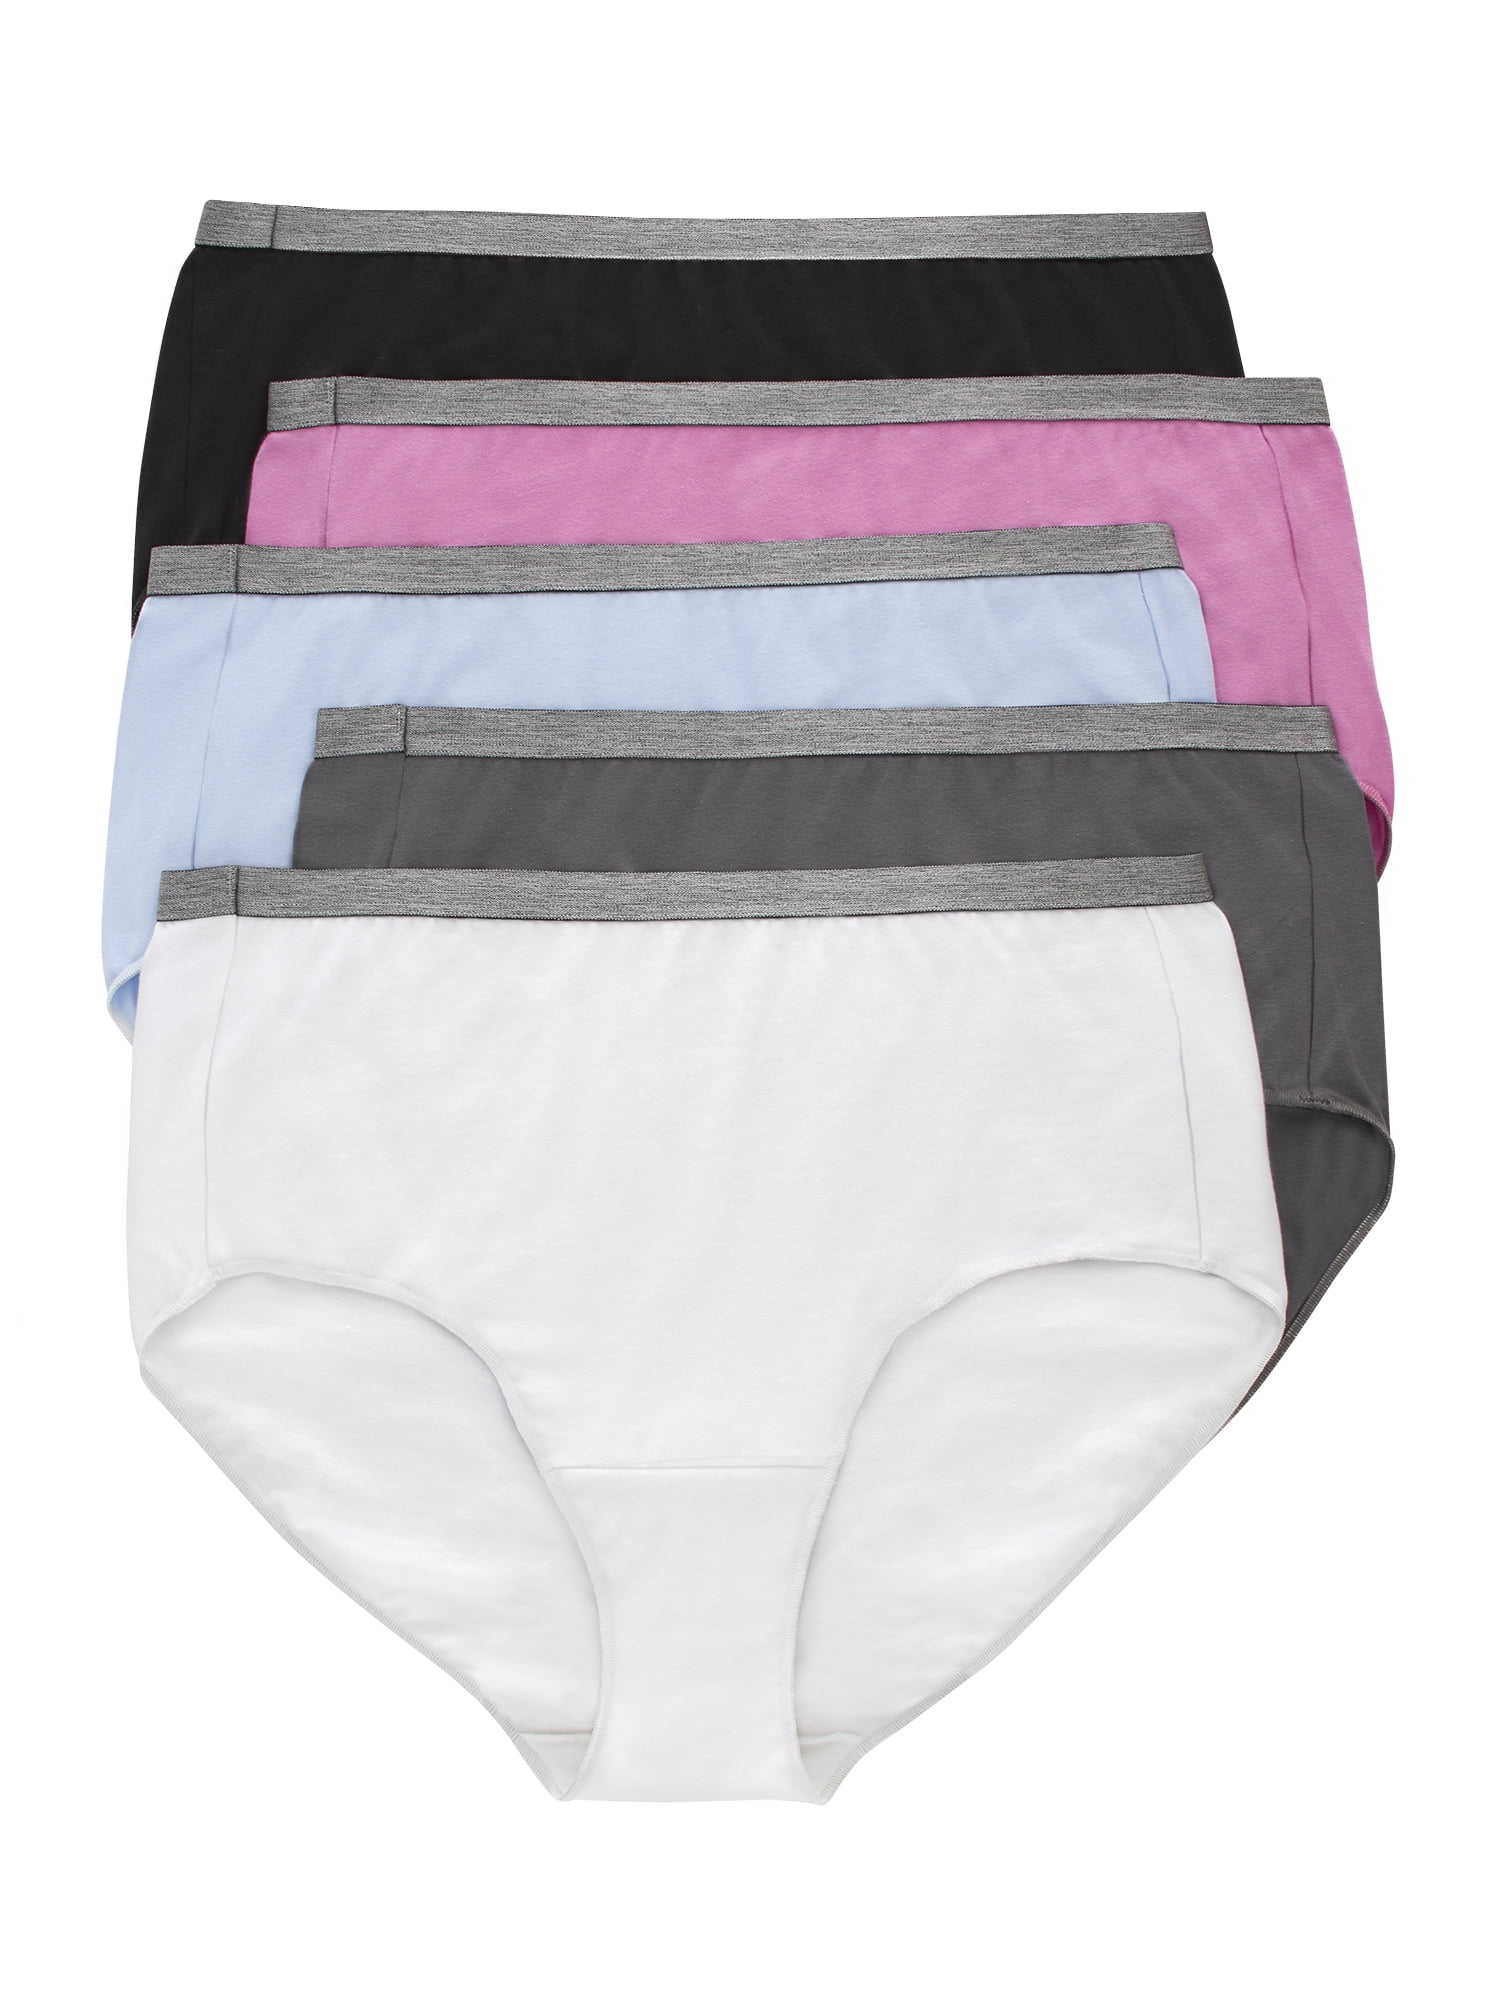 Hanes Cool Comfort Women's Cotton Brief Underwear, 5-Pack (Plus Size)